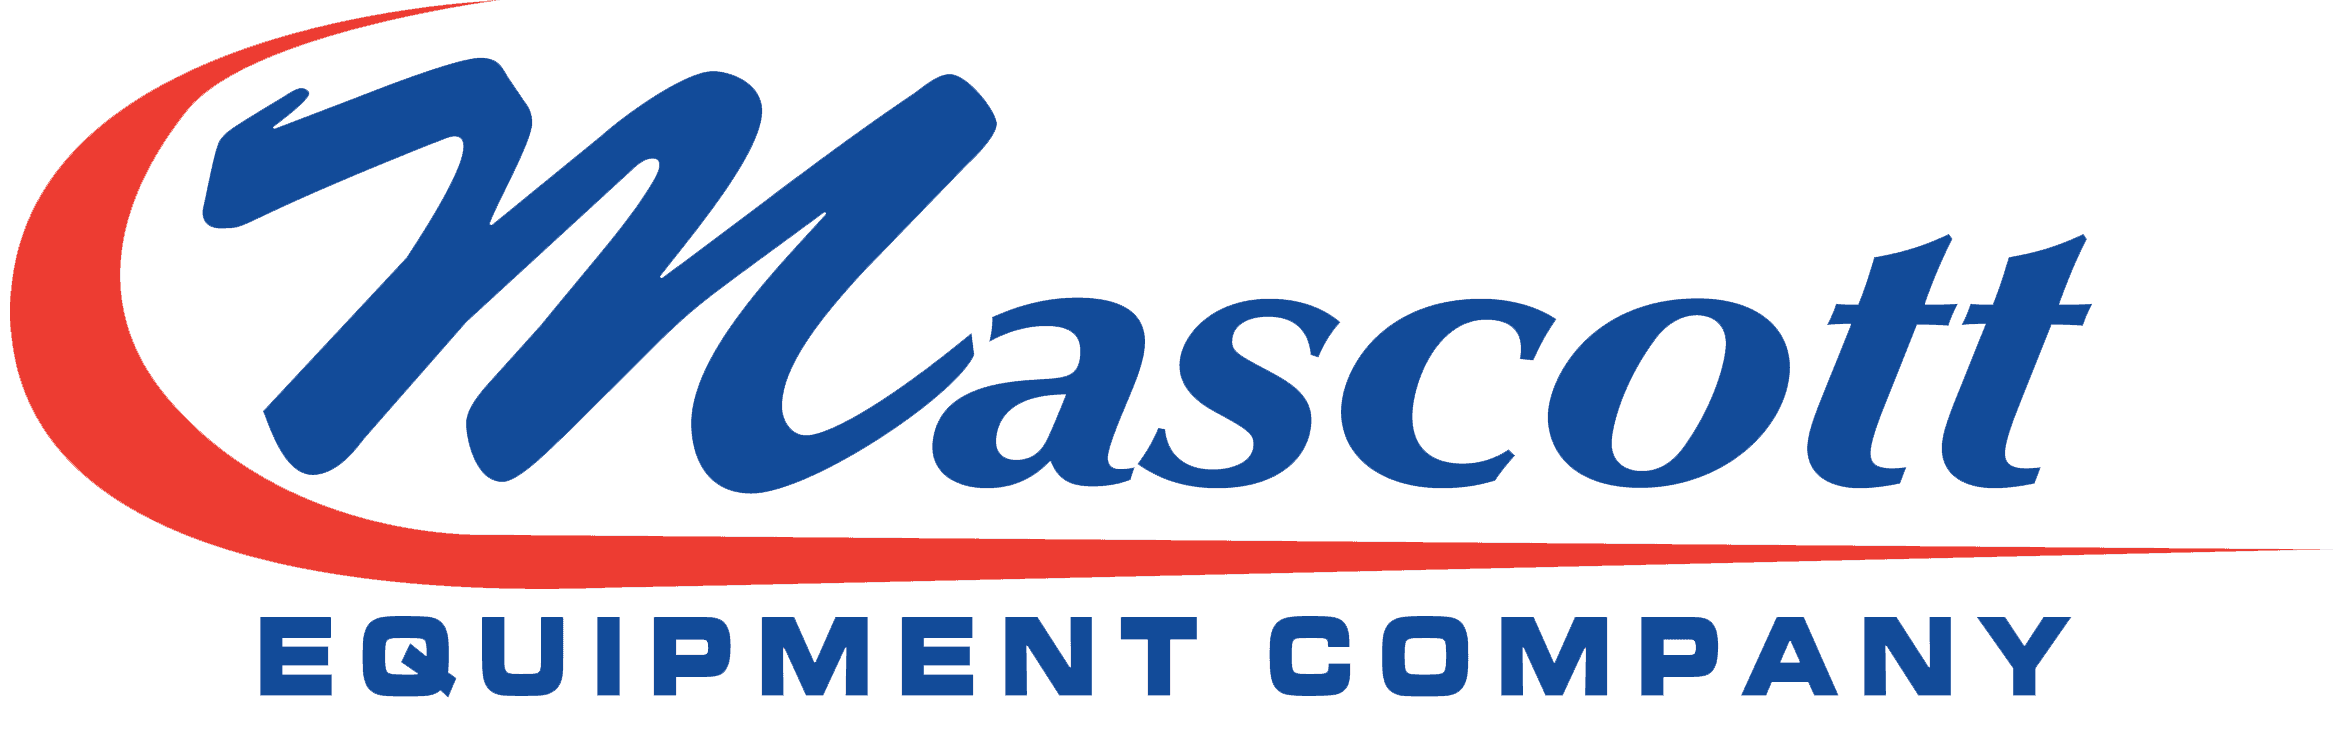 Mascott Equipment Co.